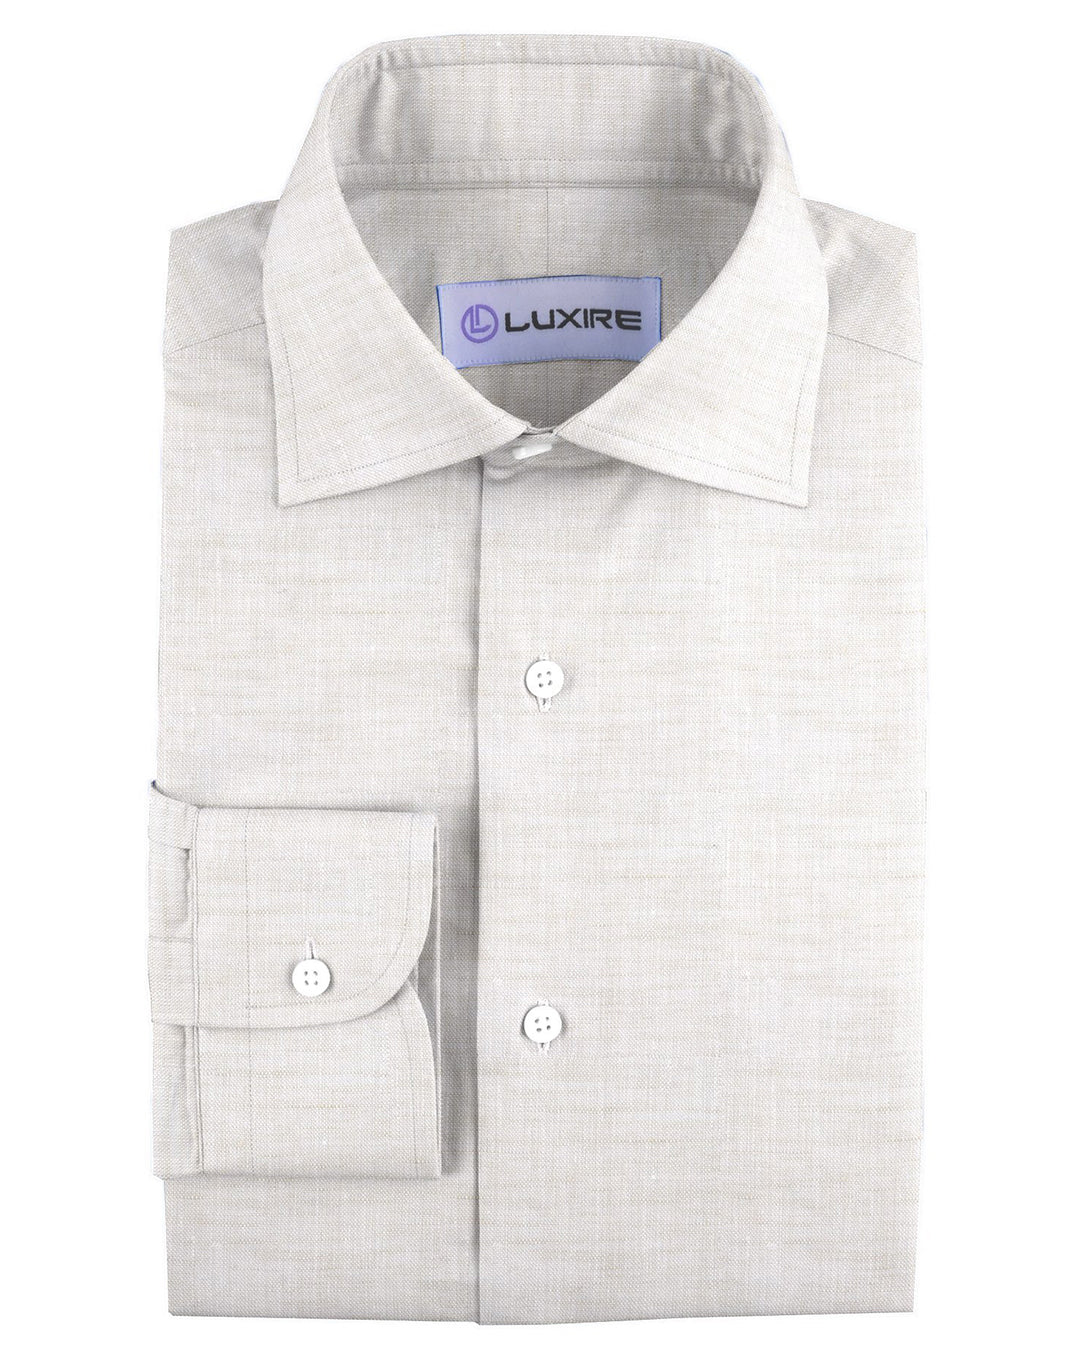 Pullover Shirt in Ecru Textured Linen